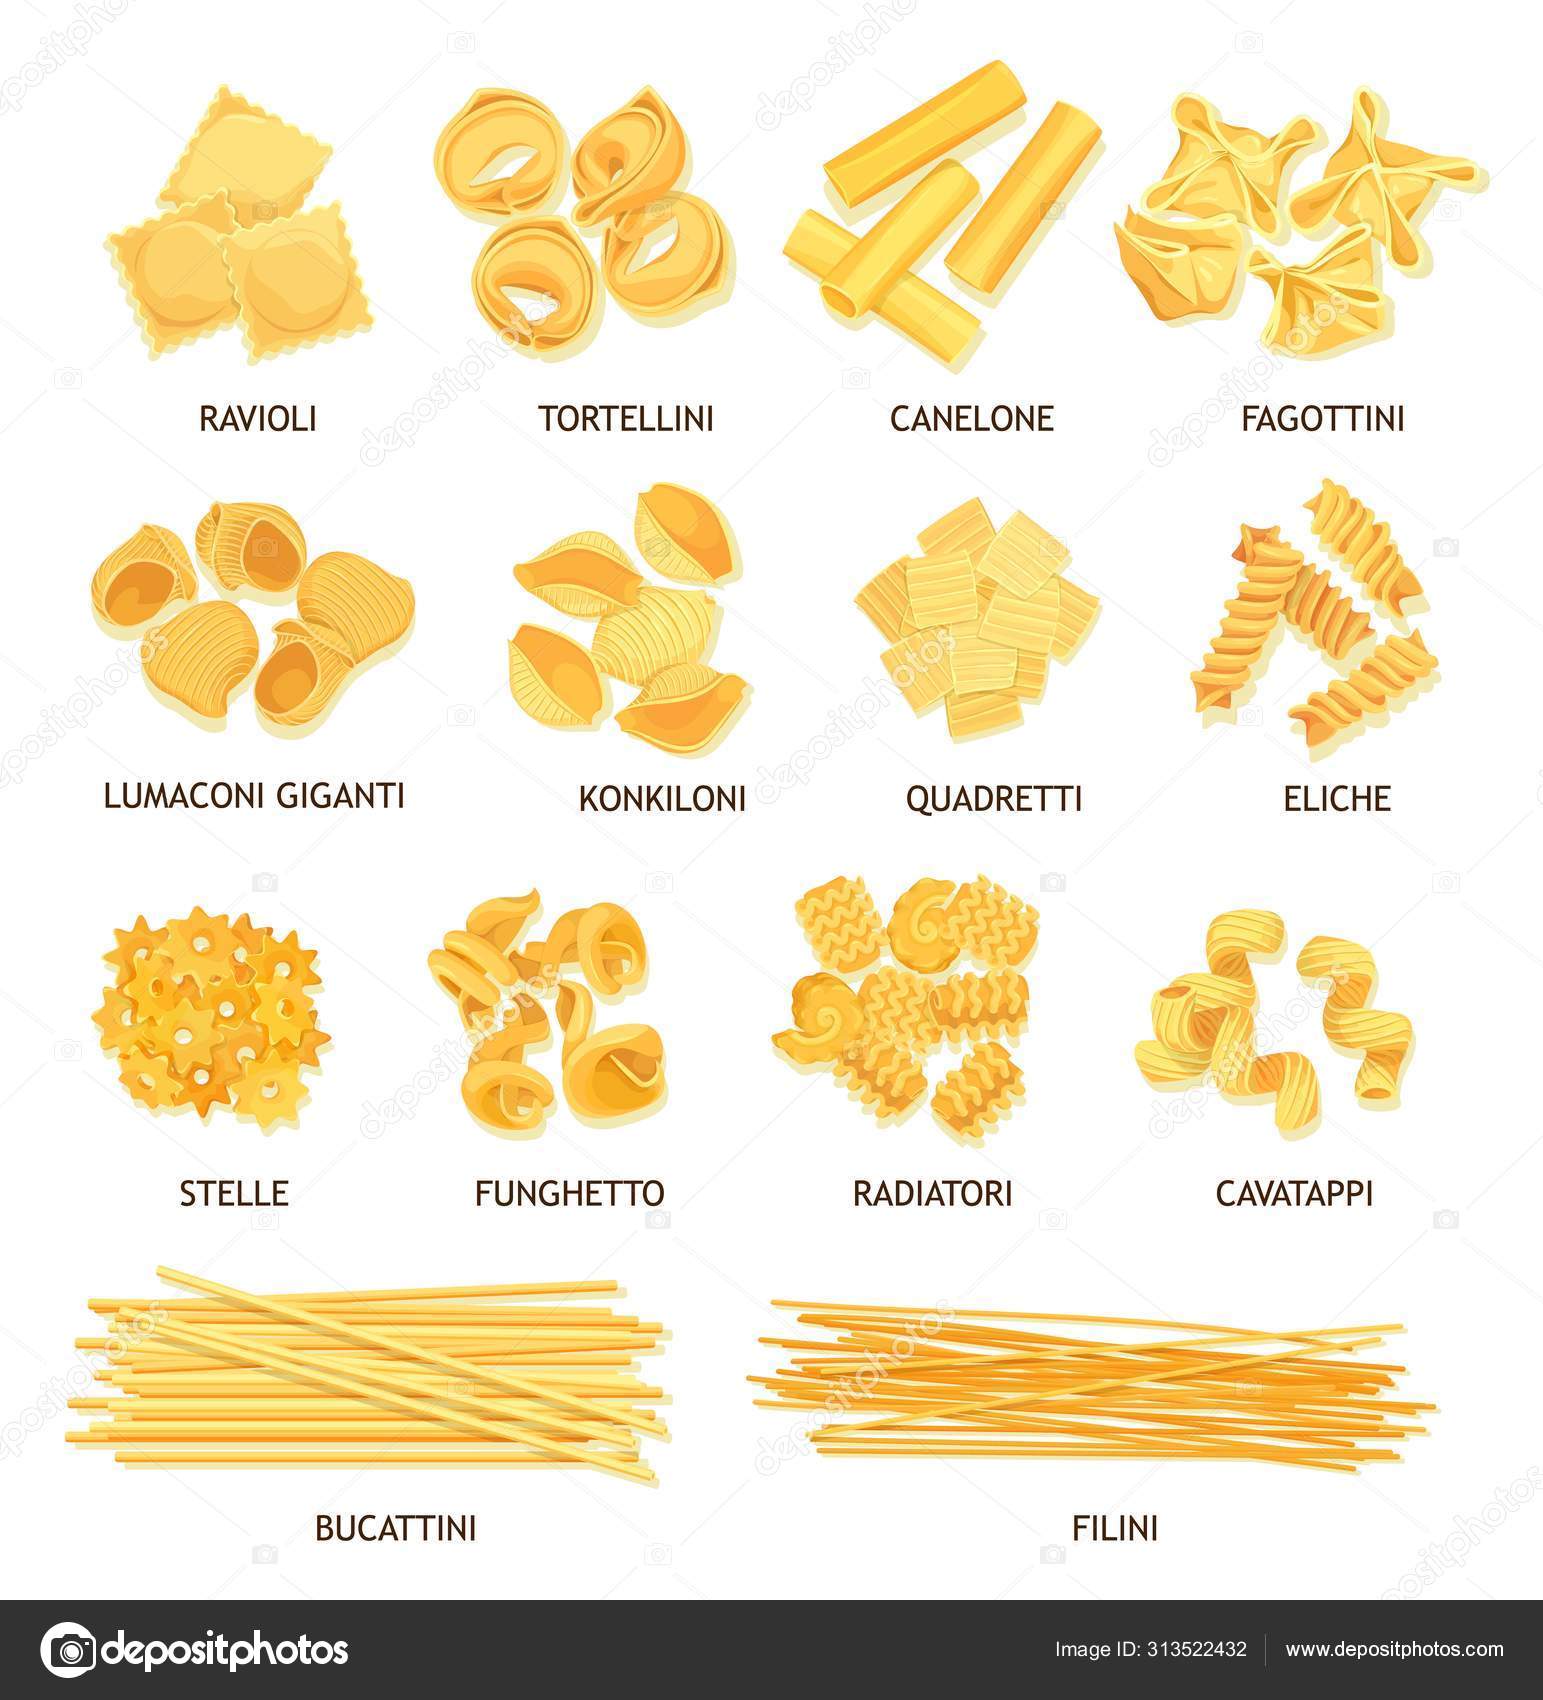 Pasta type with name poster of Italian macaroni